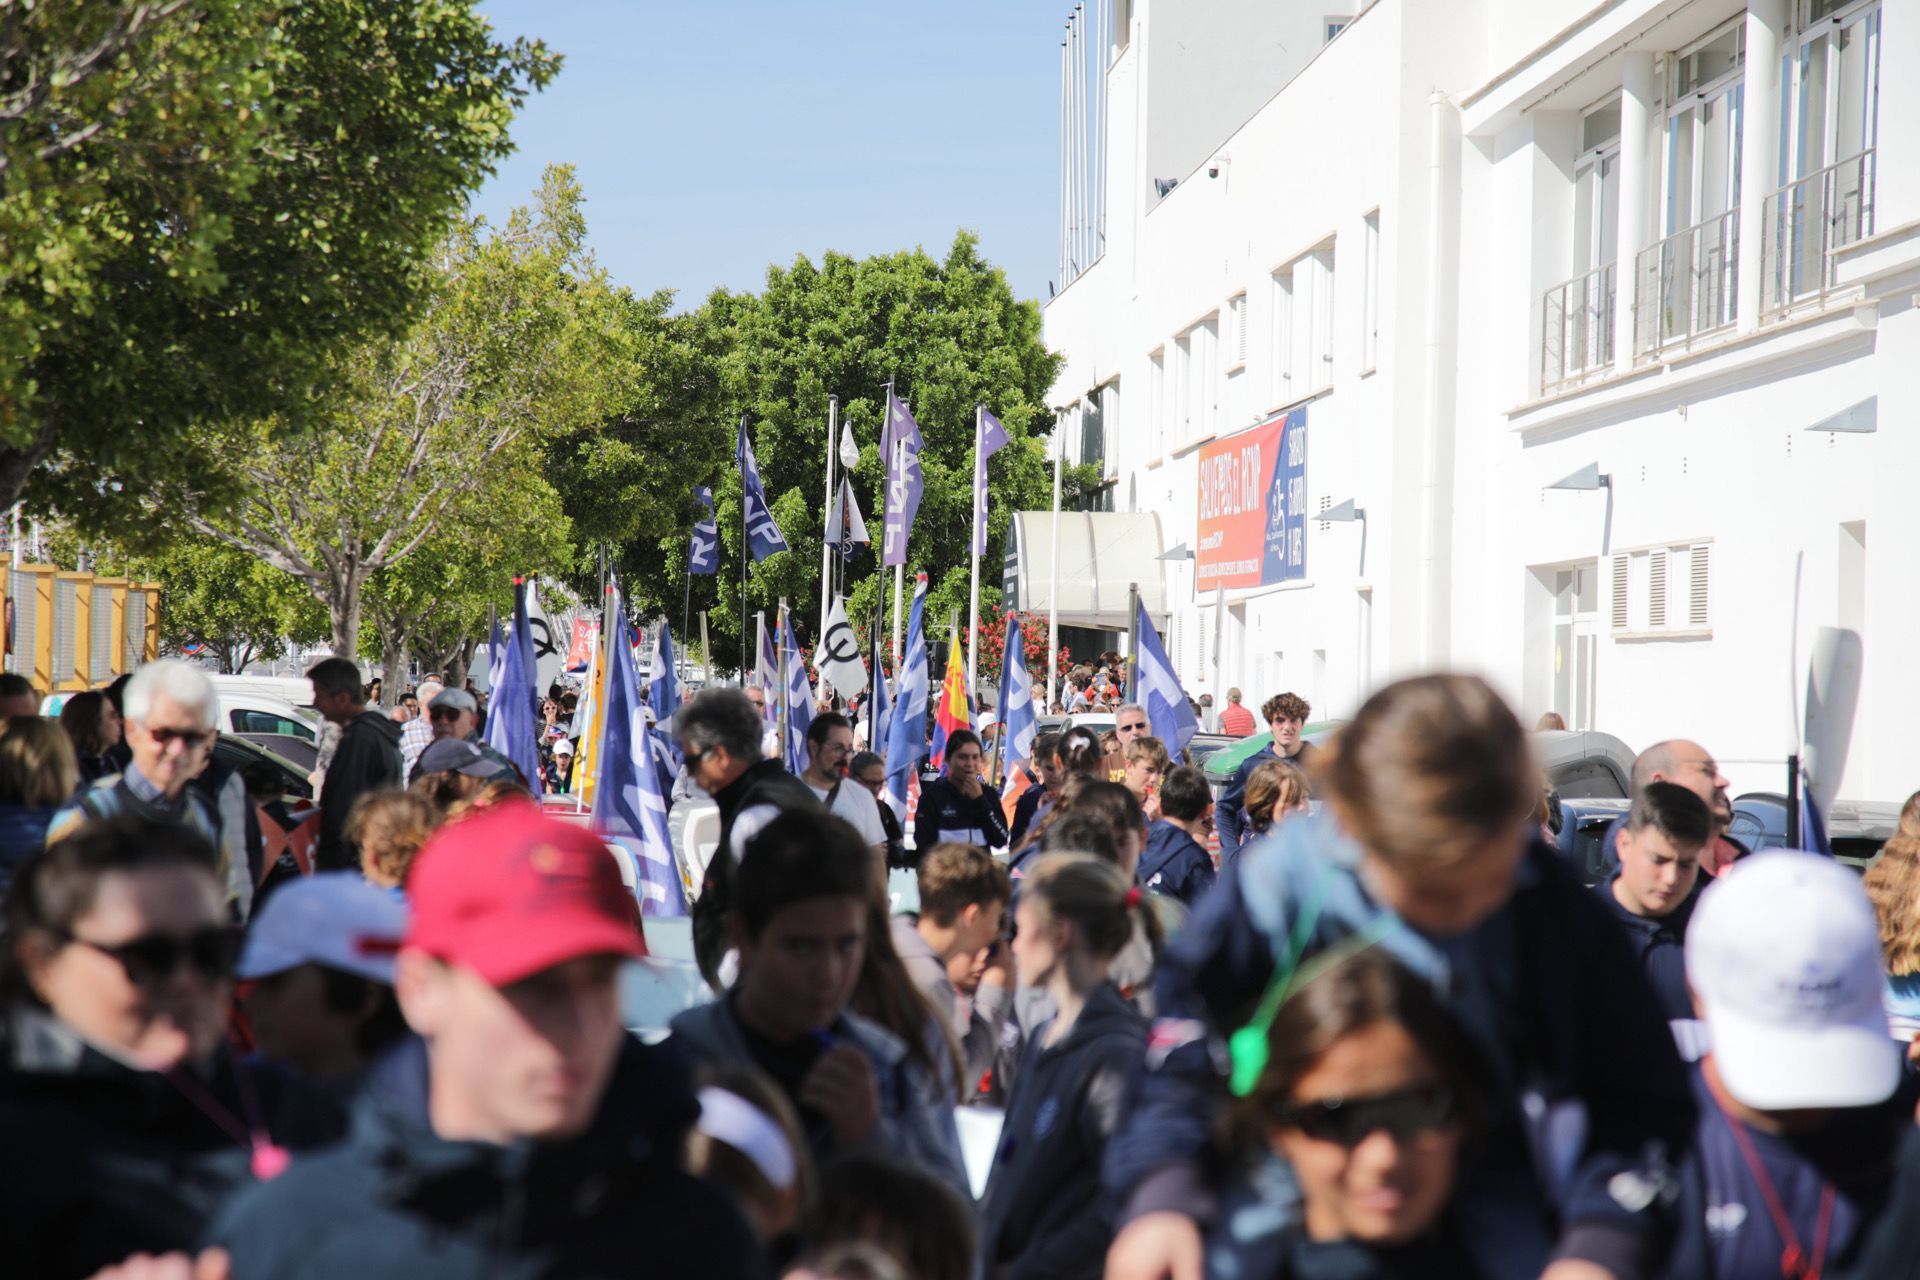 FOTOS: Manifestación para salvar al Real Club Náutico de Palma